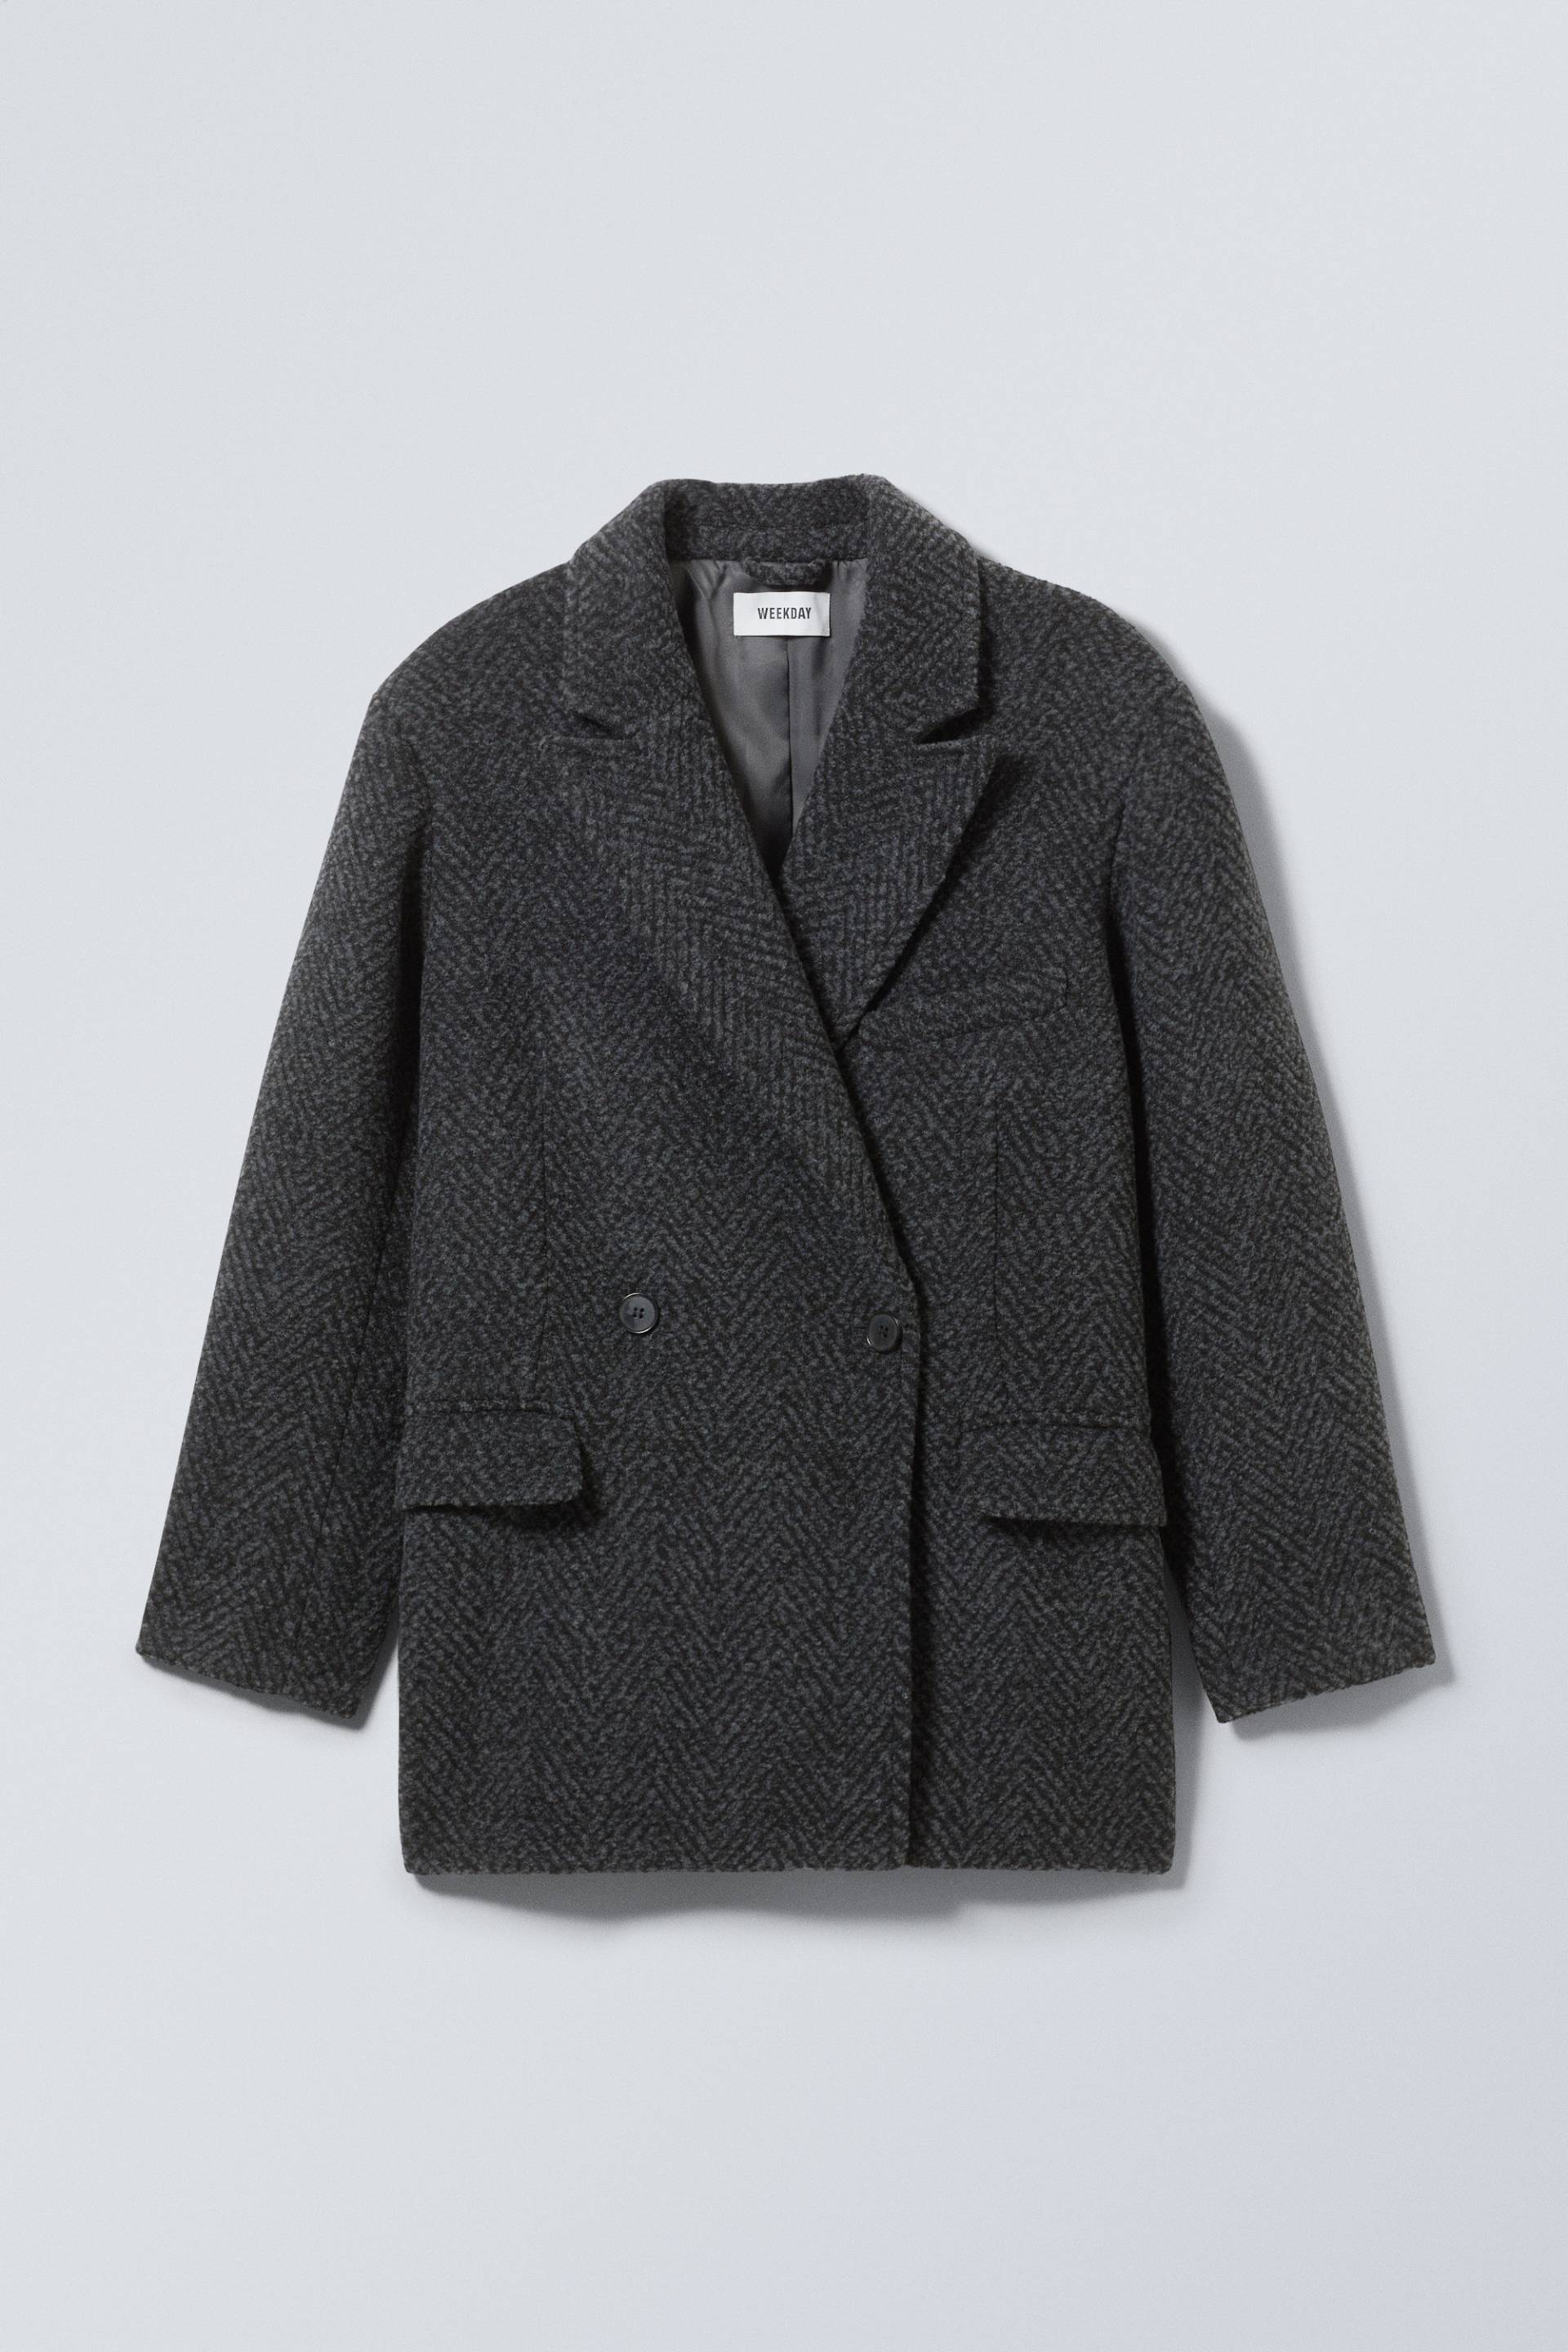 Weekday Jacke aus Wollmischung Carla Grau/Fischgrätmuster, Jacken in Größe 44. Farbe: Grey herringbone von Weekday